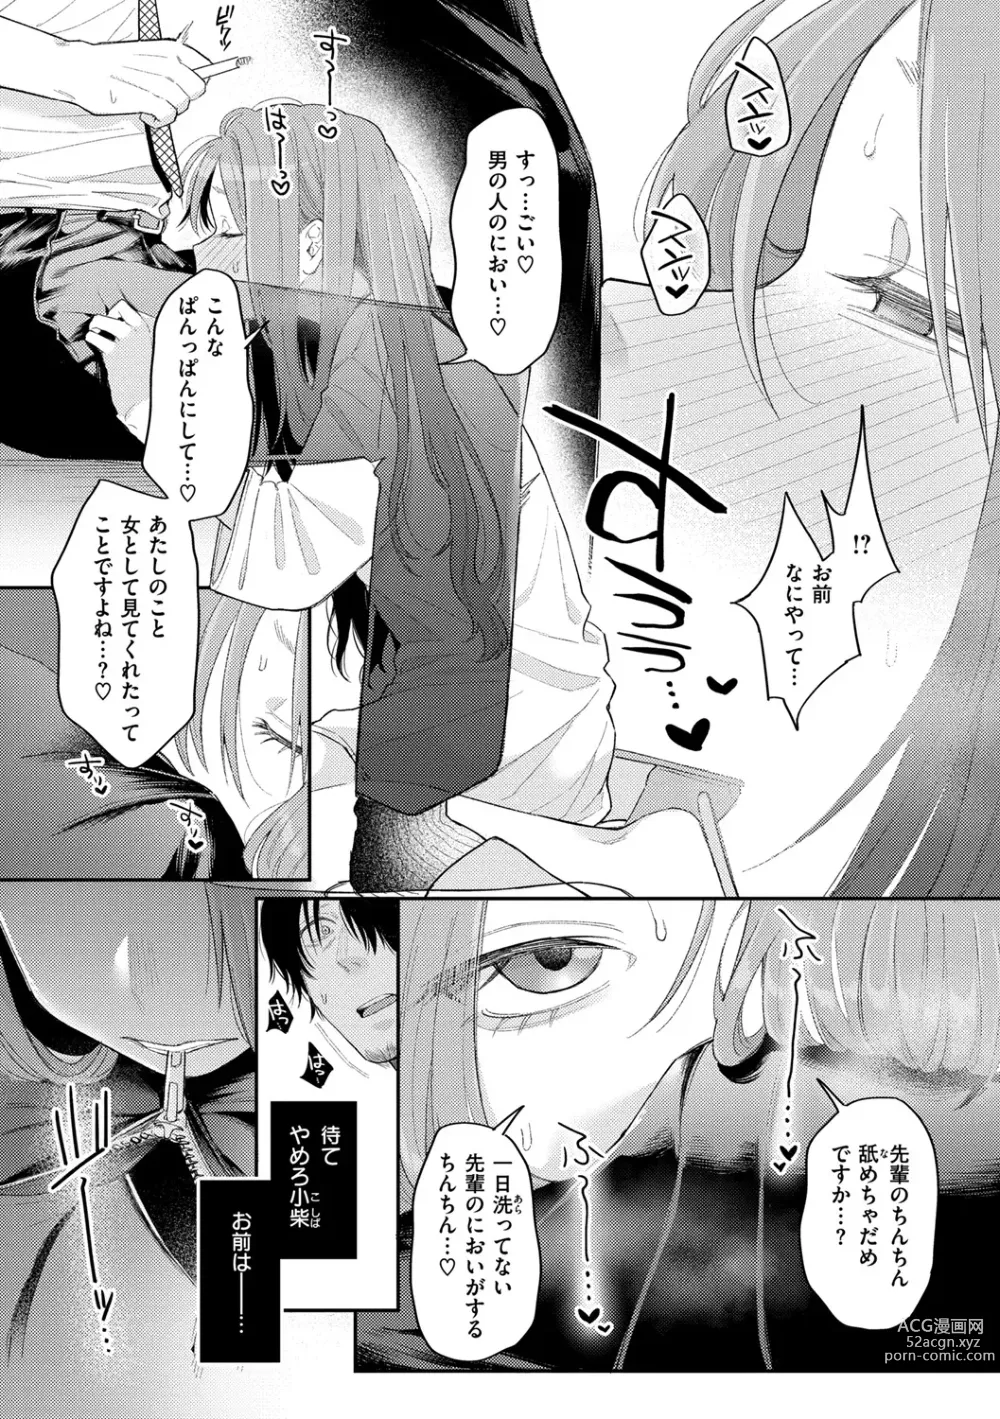 Page 16 of manga Konya Mechakucha ni Nattara - Fill me up tonight